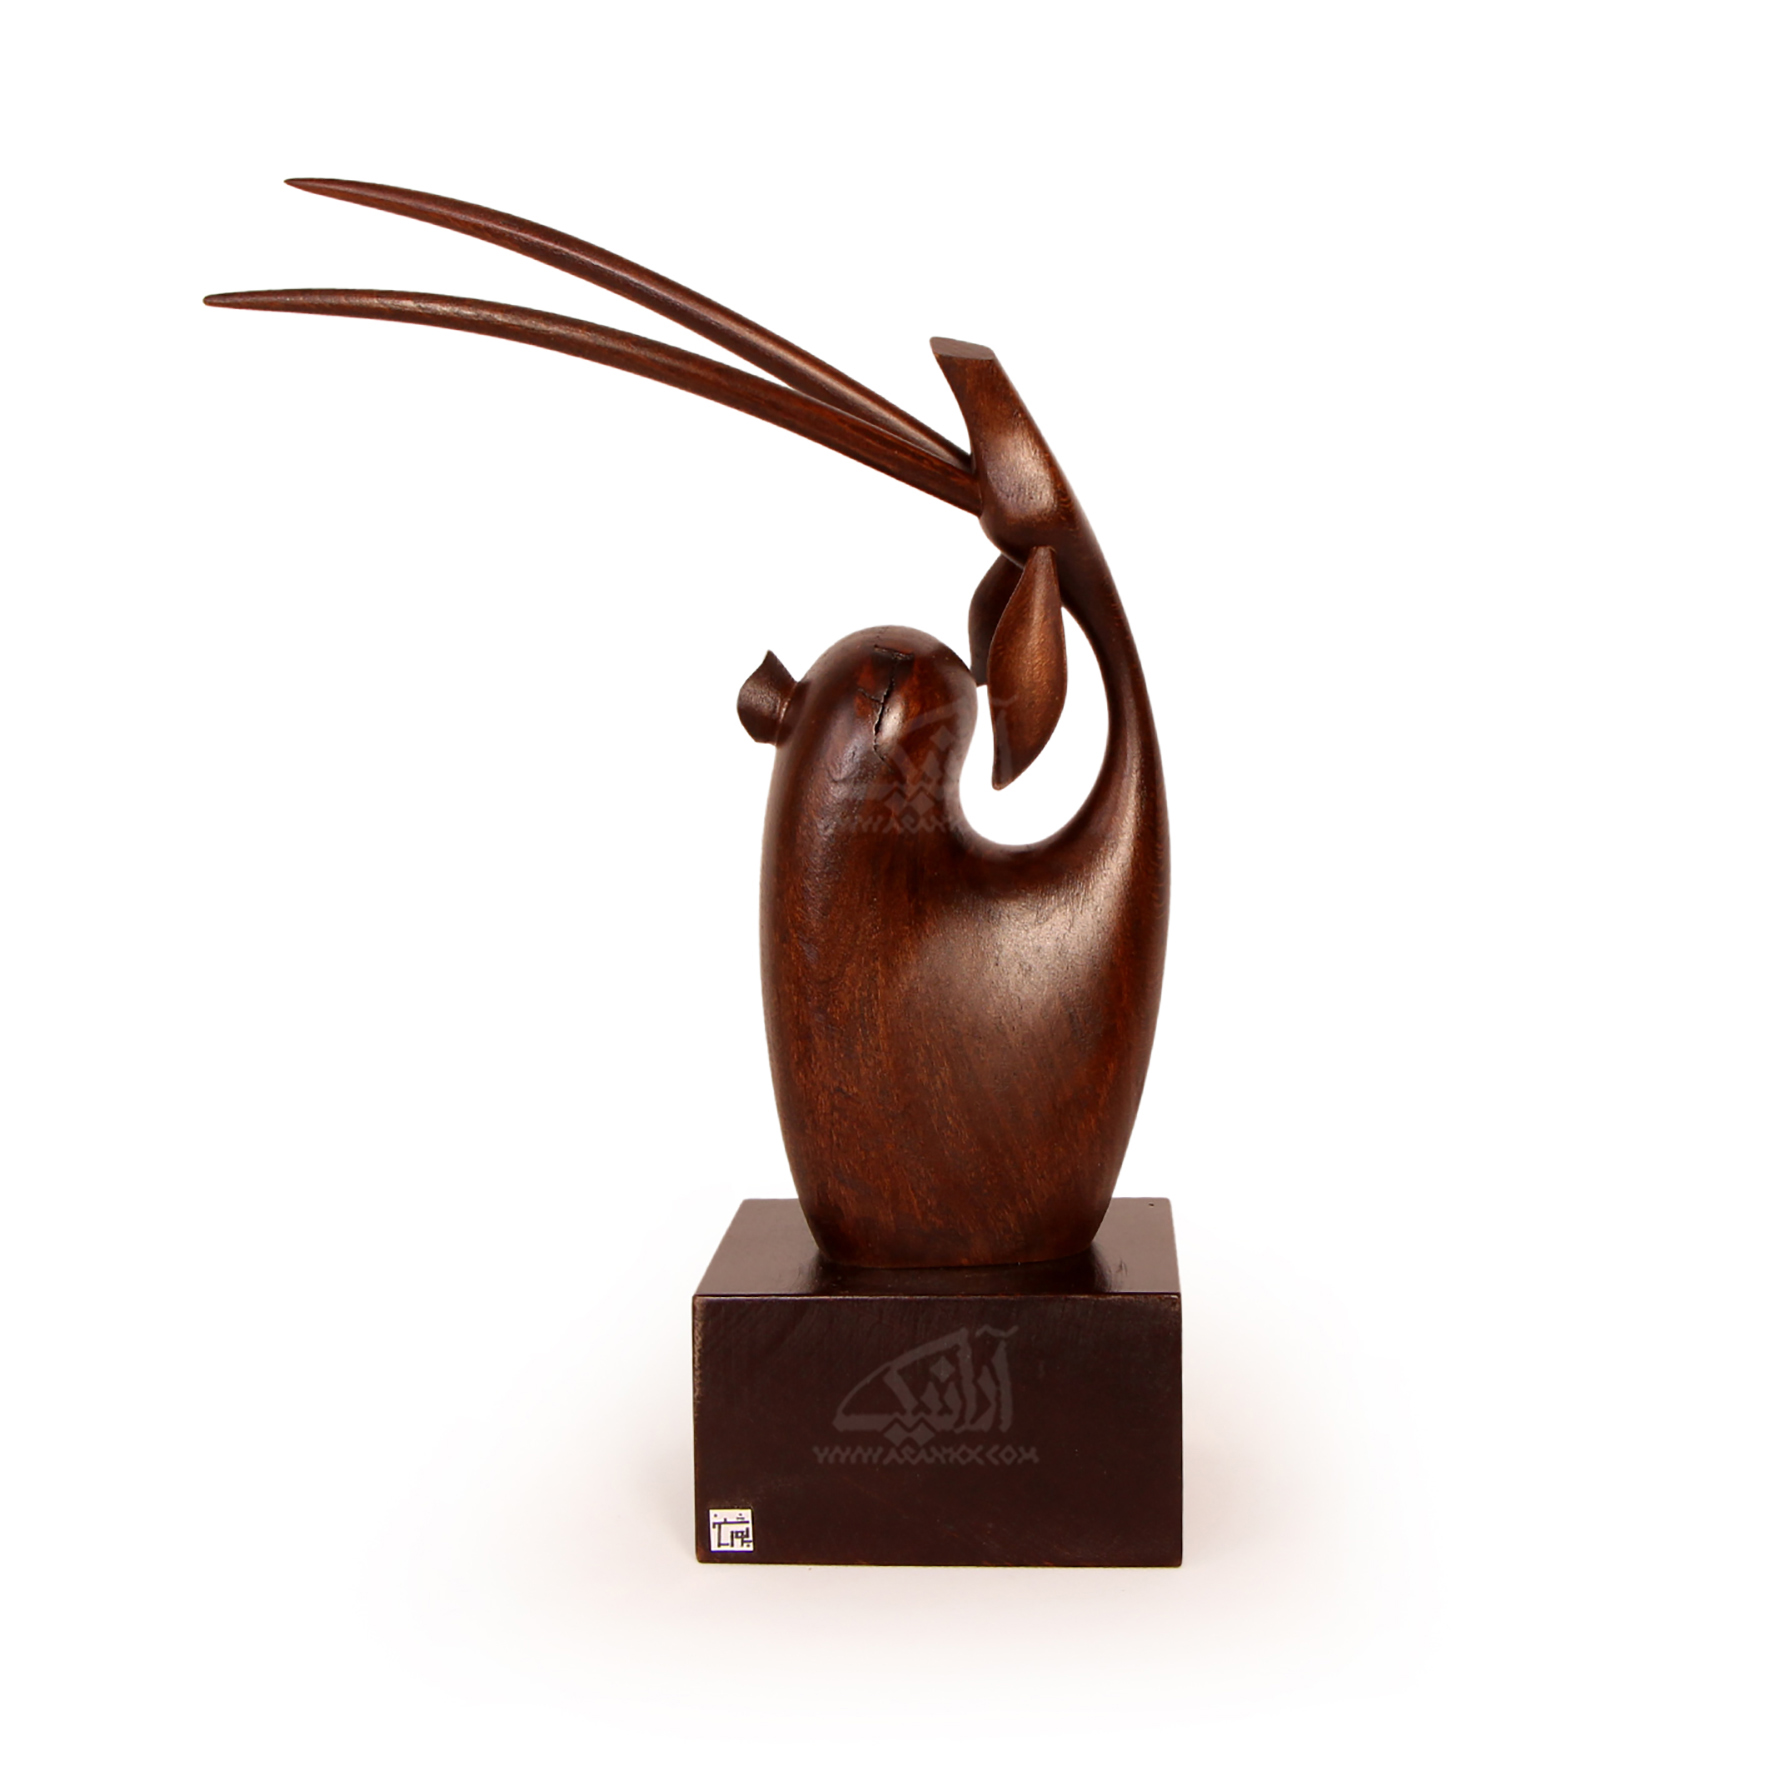 ‎مجسمه‎ غزال چوبی‎ ‎‎‎‎ساده‎ ‎‎ رنگ ‎قهوه ای تیره ‎‎‎‎مدل 1105900015